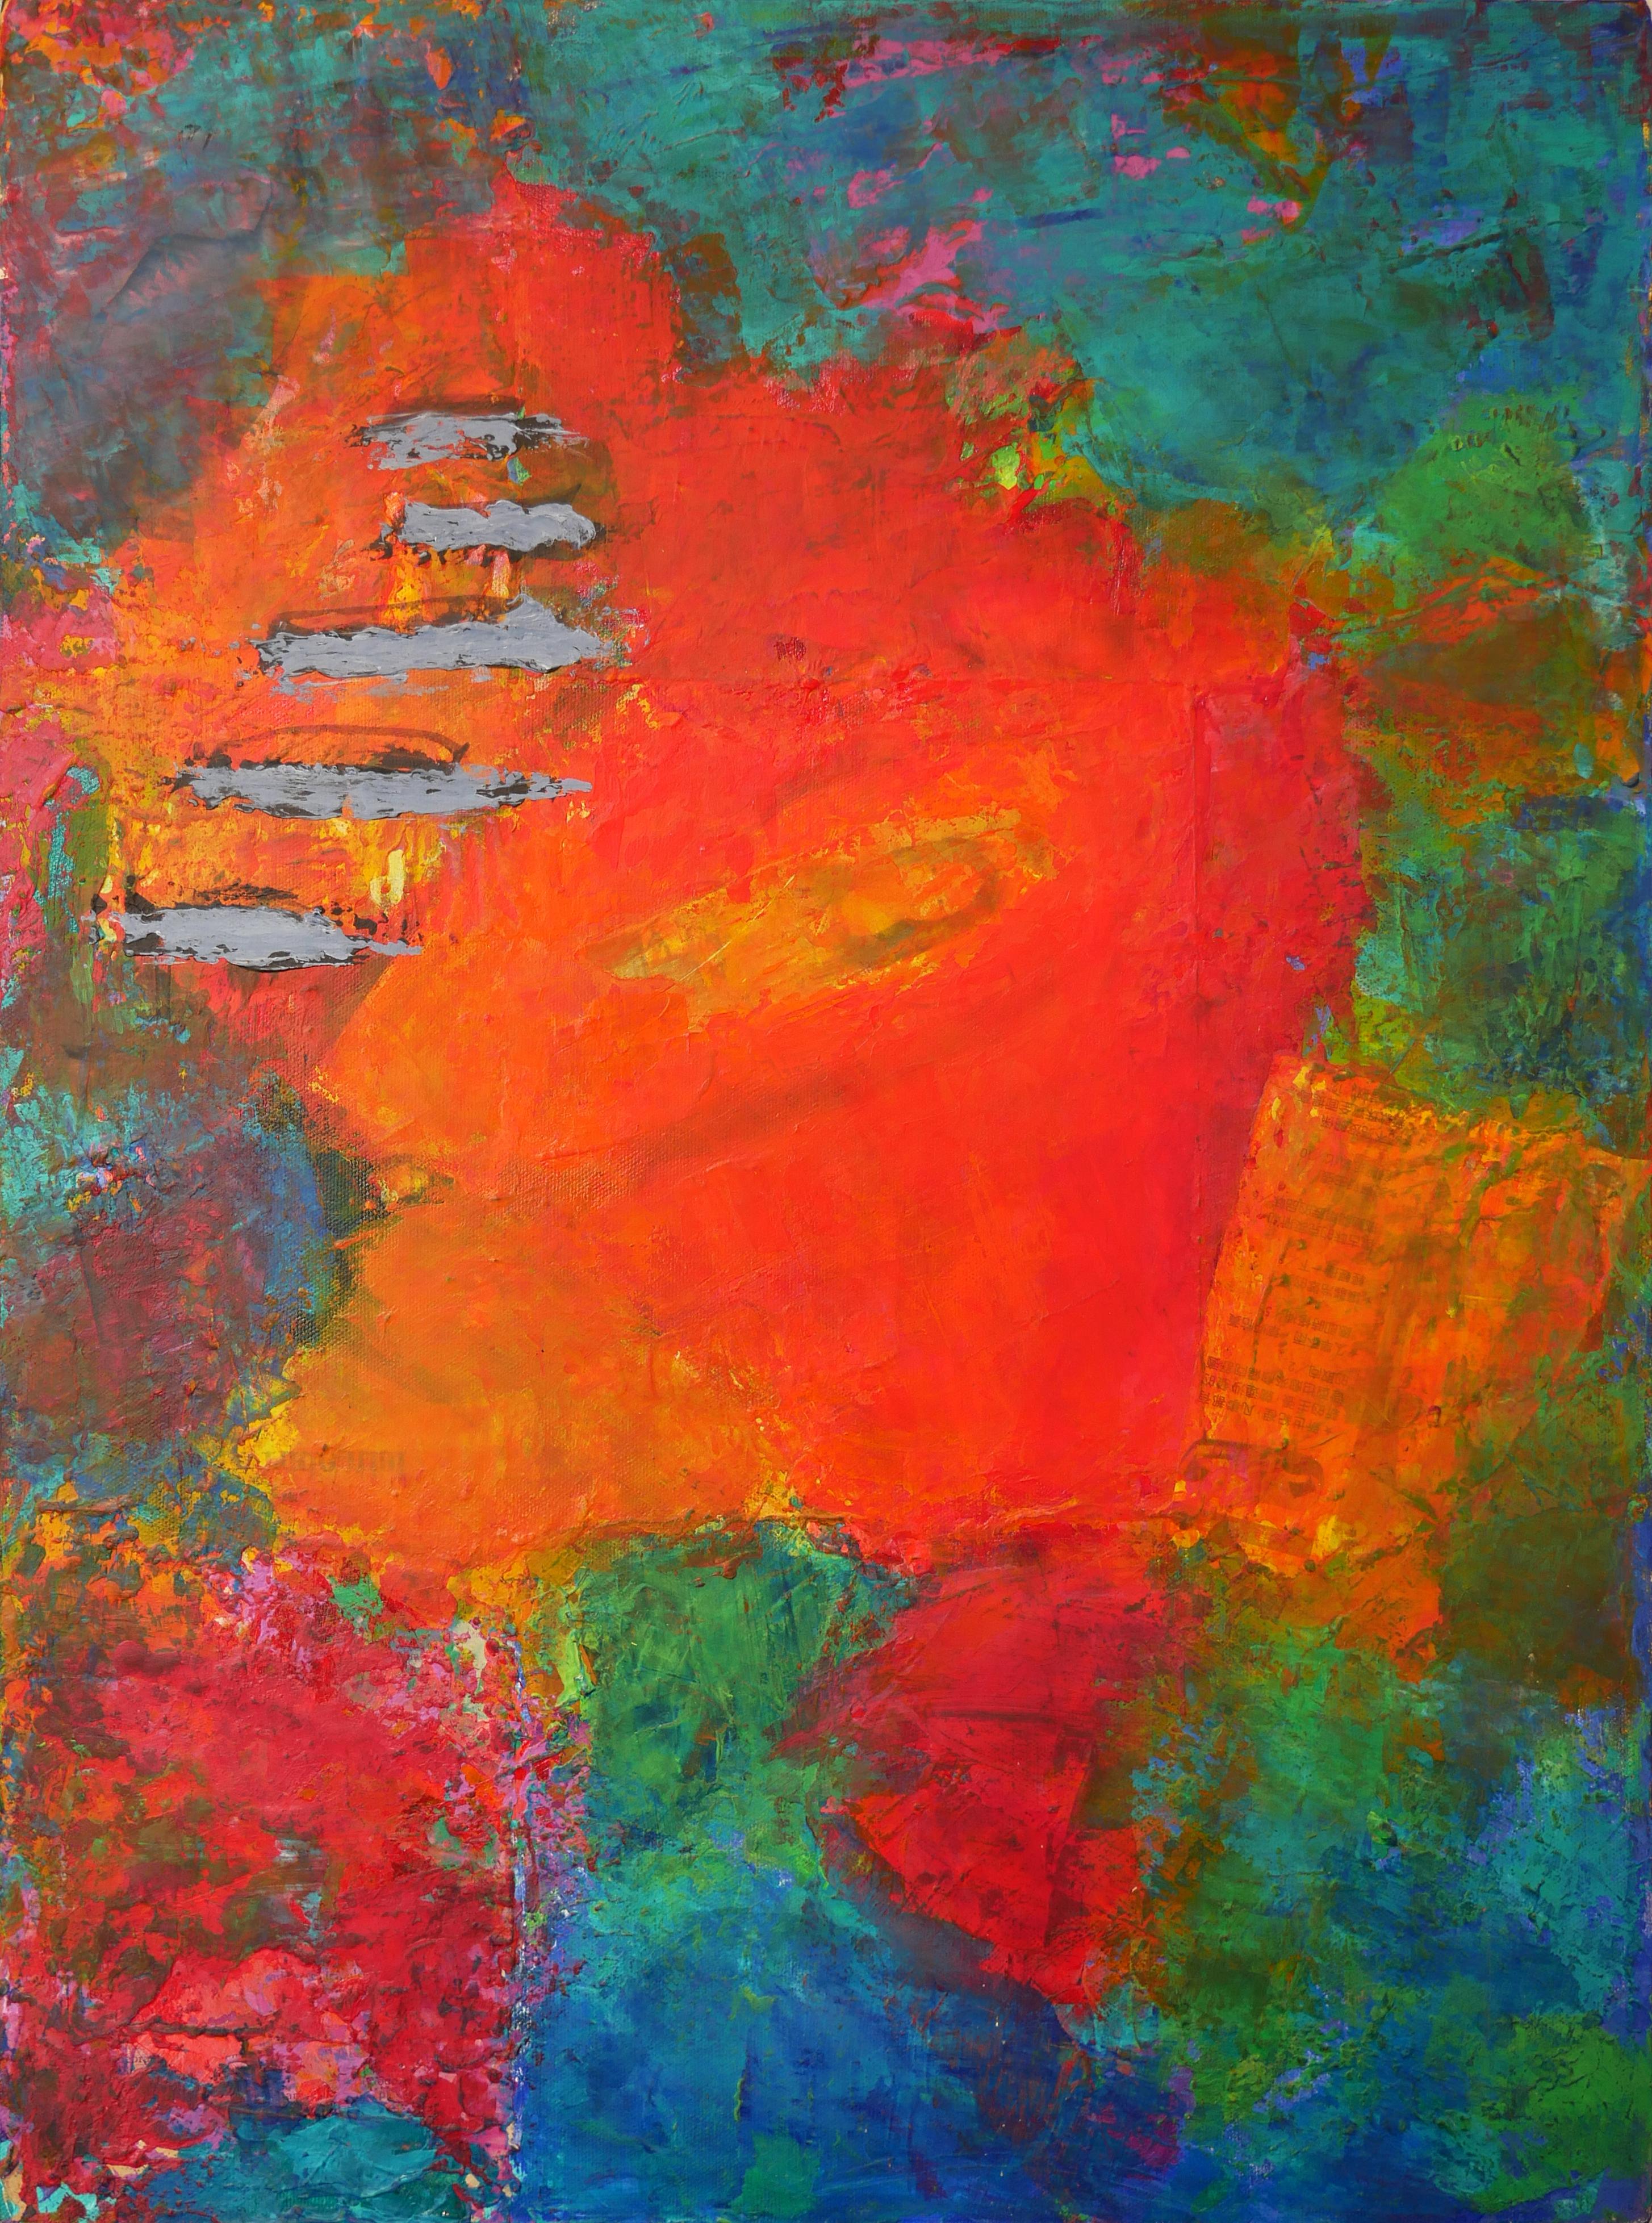 Saturday Morning Modernes rotes, blaues und grünes abstraktes expressionistisches Gemälde